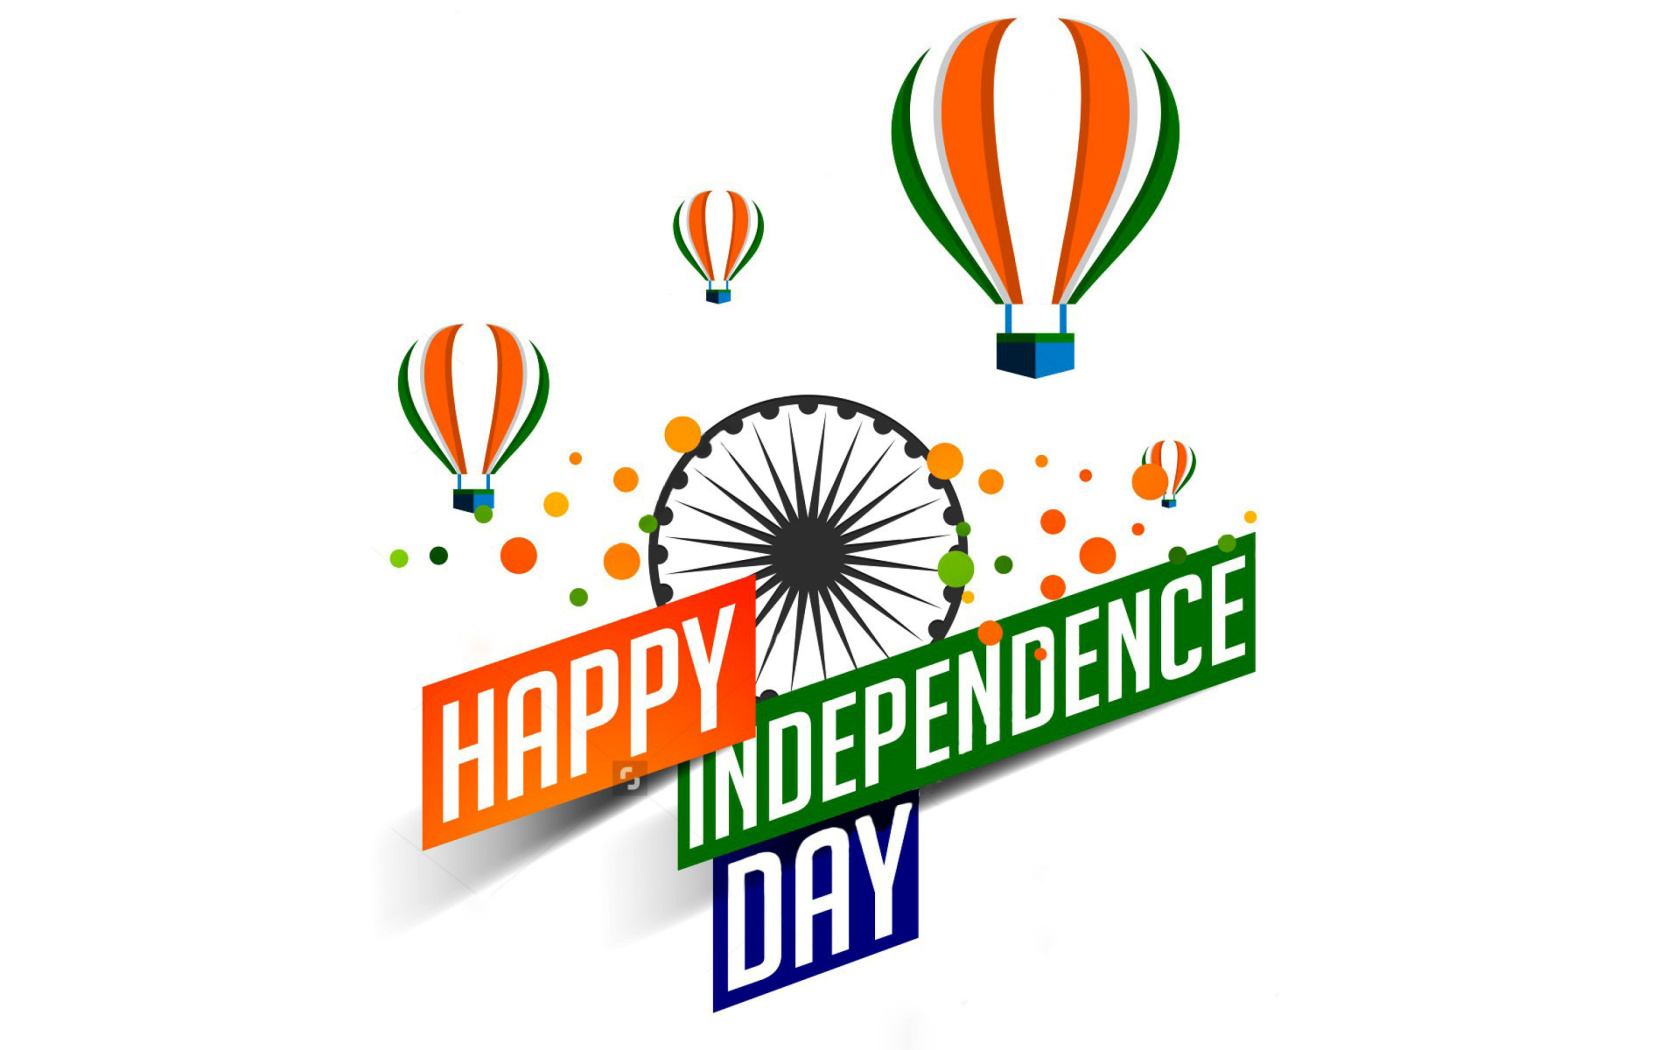 Обои Happy Independence Day of India 2016, 2017 1680x1050